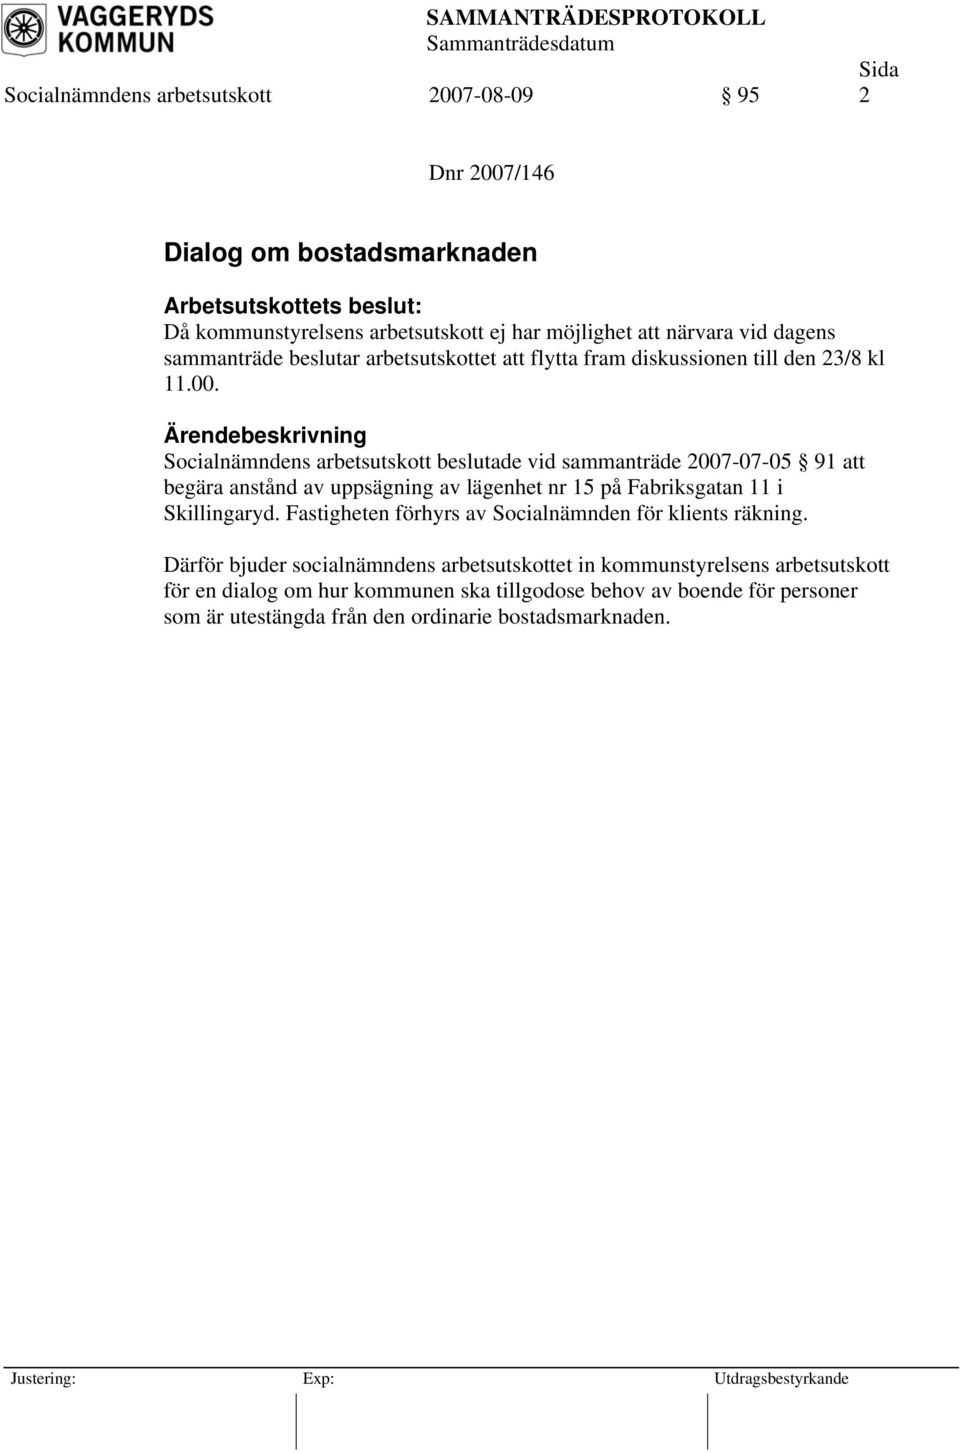 Socialnämndens arbetsutskott beslutade vid sammanträde 2007-07-05 91 att begära anstånd av uppsägning av lägenhet nr 15 på Fabriksgatan 11 i Skillingaryd.